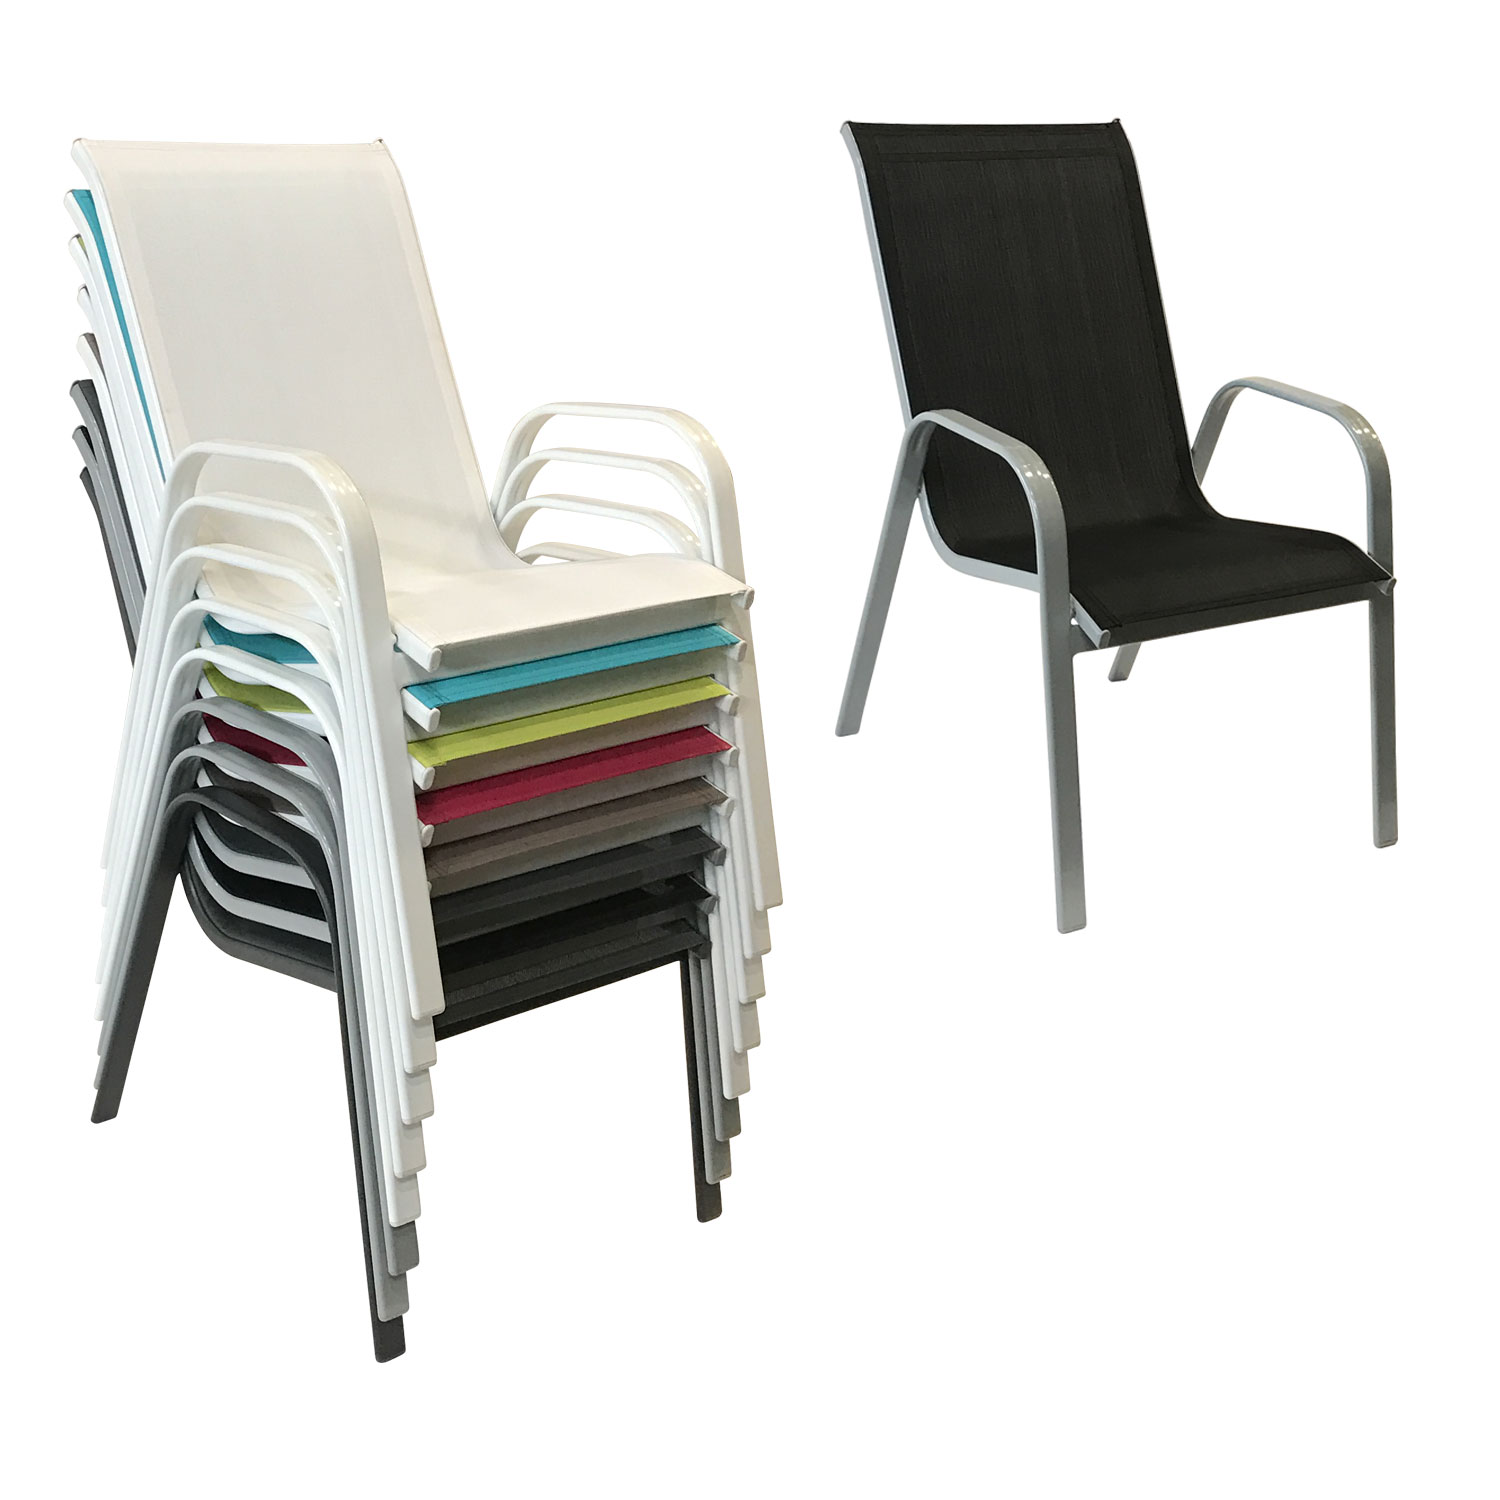 Lot de 4 chaises MARBELLA en textilène noir - aluminium gris